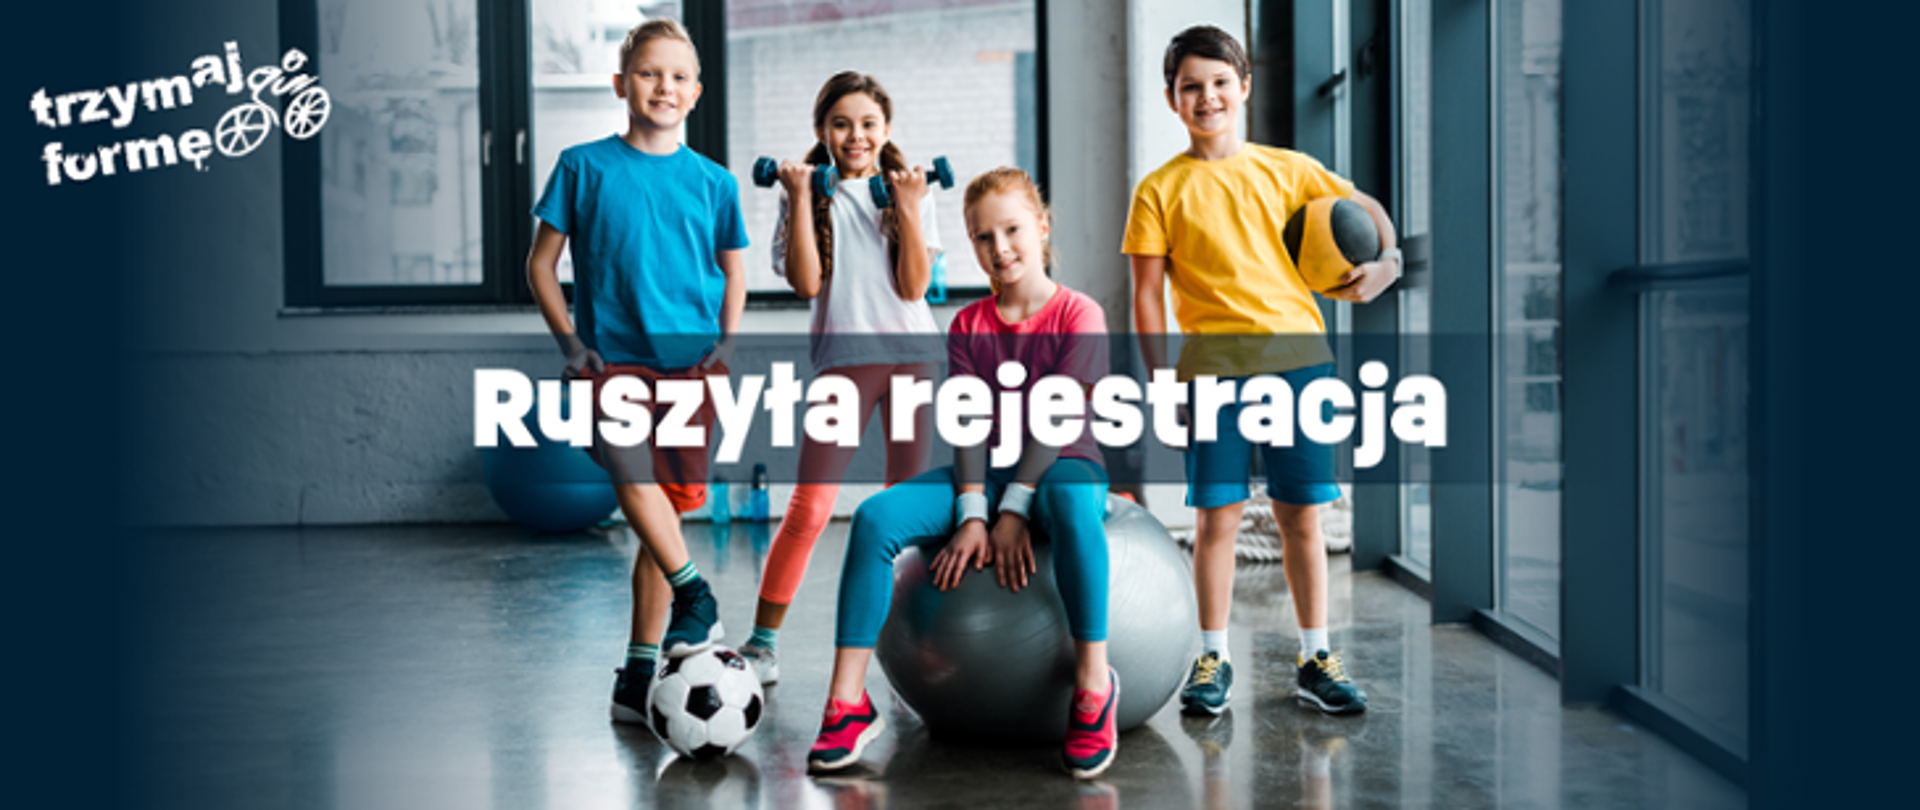 Zdjęcie przedstawiające 4 dzieci: dwóch chłopców i dwie dziewczyny ze sprzętem sportowym. W lewym rogu logo "Trzymaj Formę". Na środku napis "ruszyła rejestracja".